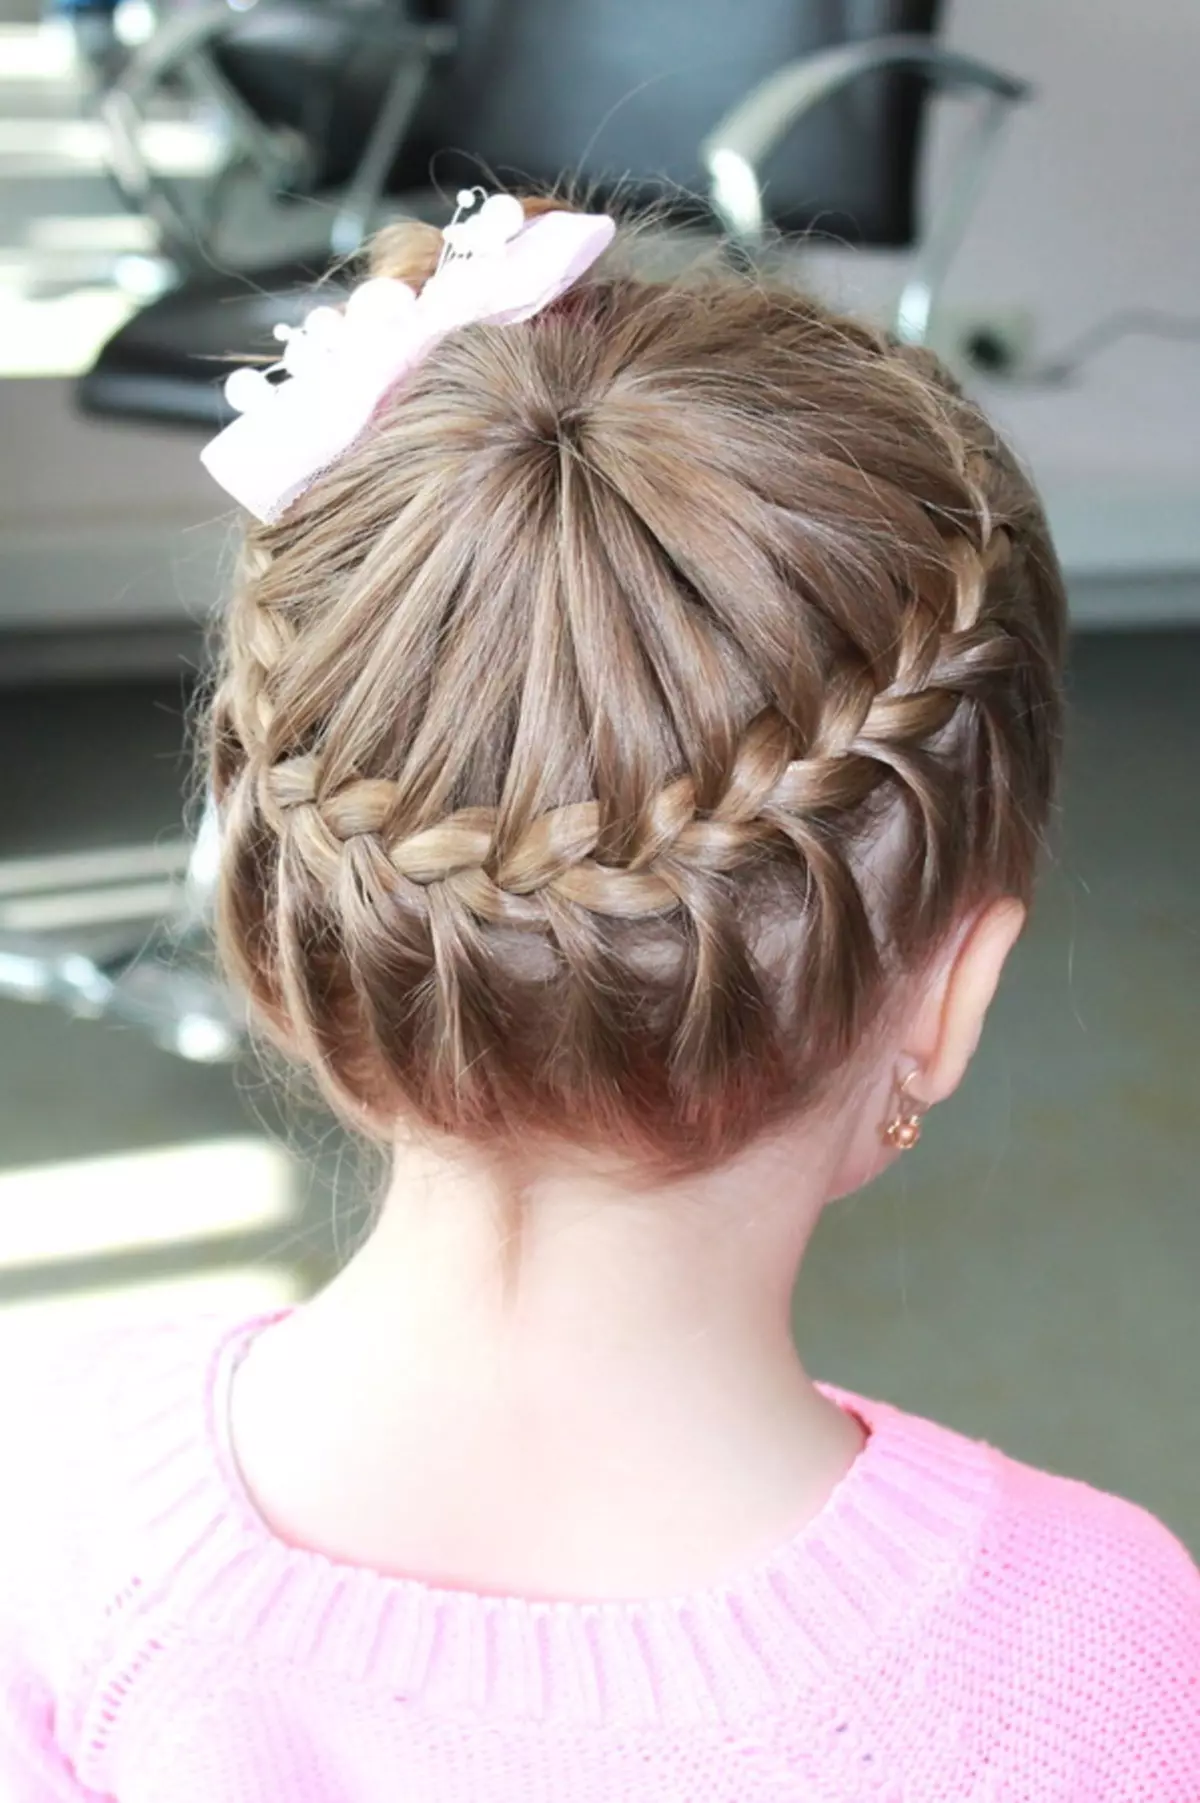 Предивне фризуре за девојчице у вртићу за 5 минута: Како брзо направити једноставну дјевојку фризуре са дугом и кратком косом у вртићу? 16798_23